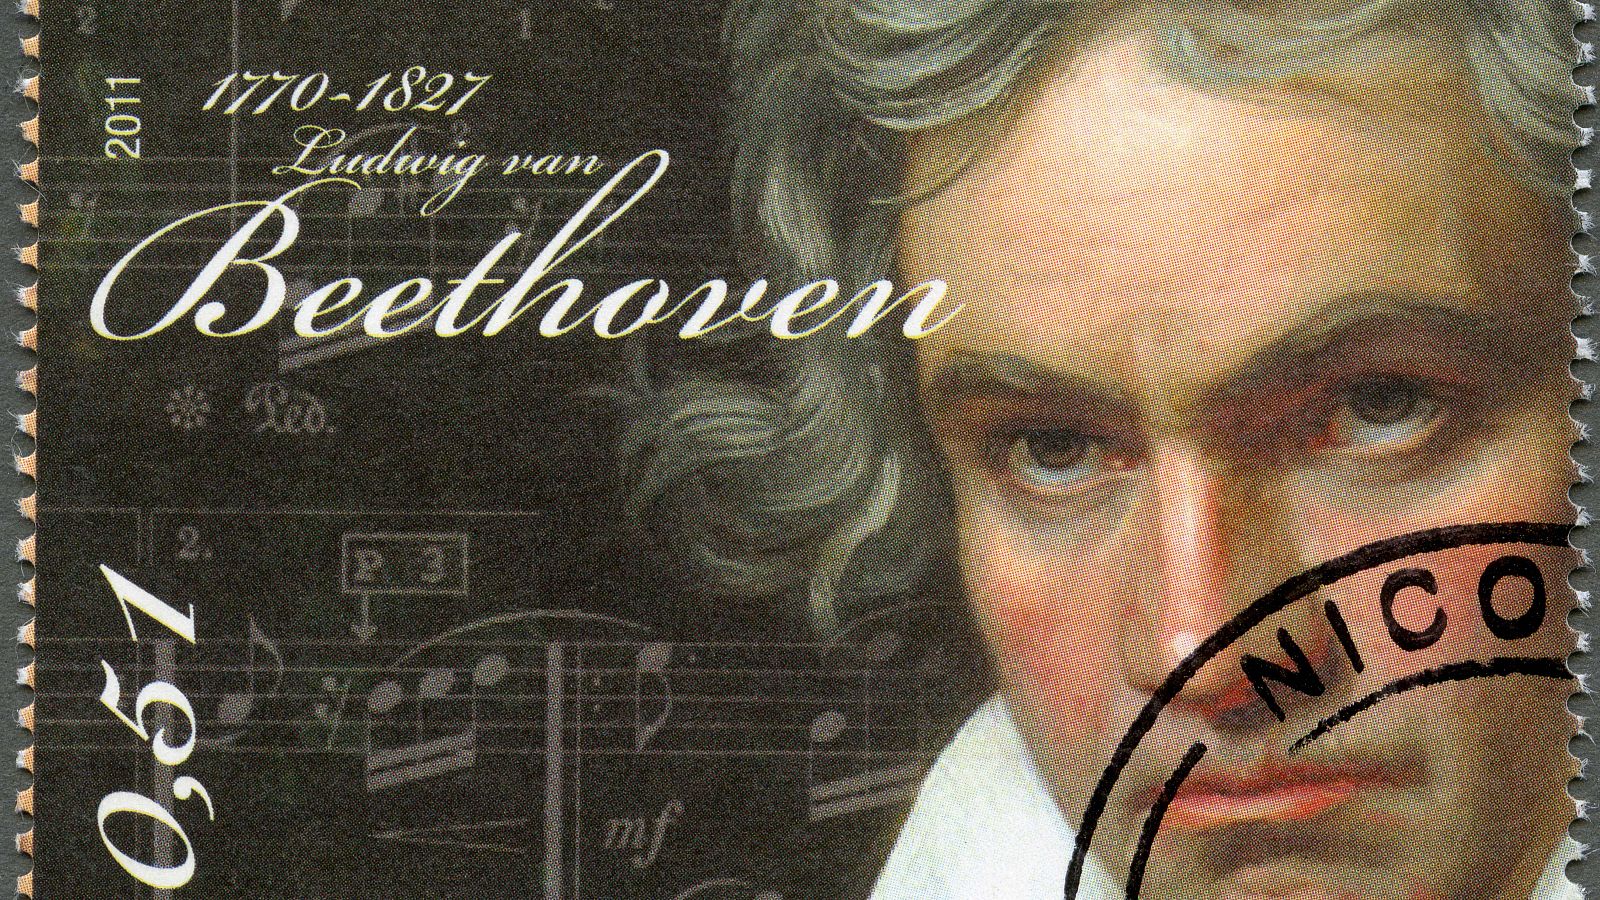 Ludwig van Beethoven murió en 1827 debido a una grave enfermedad hepática, posiblemente cirrosis.